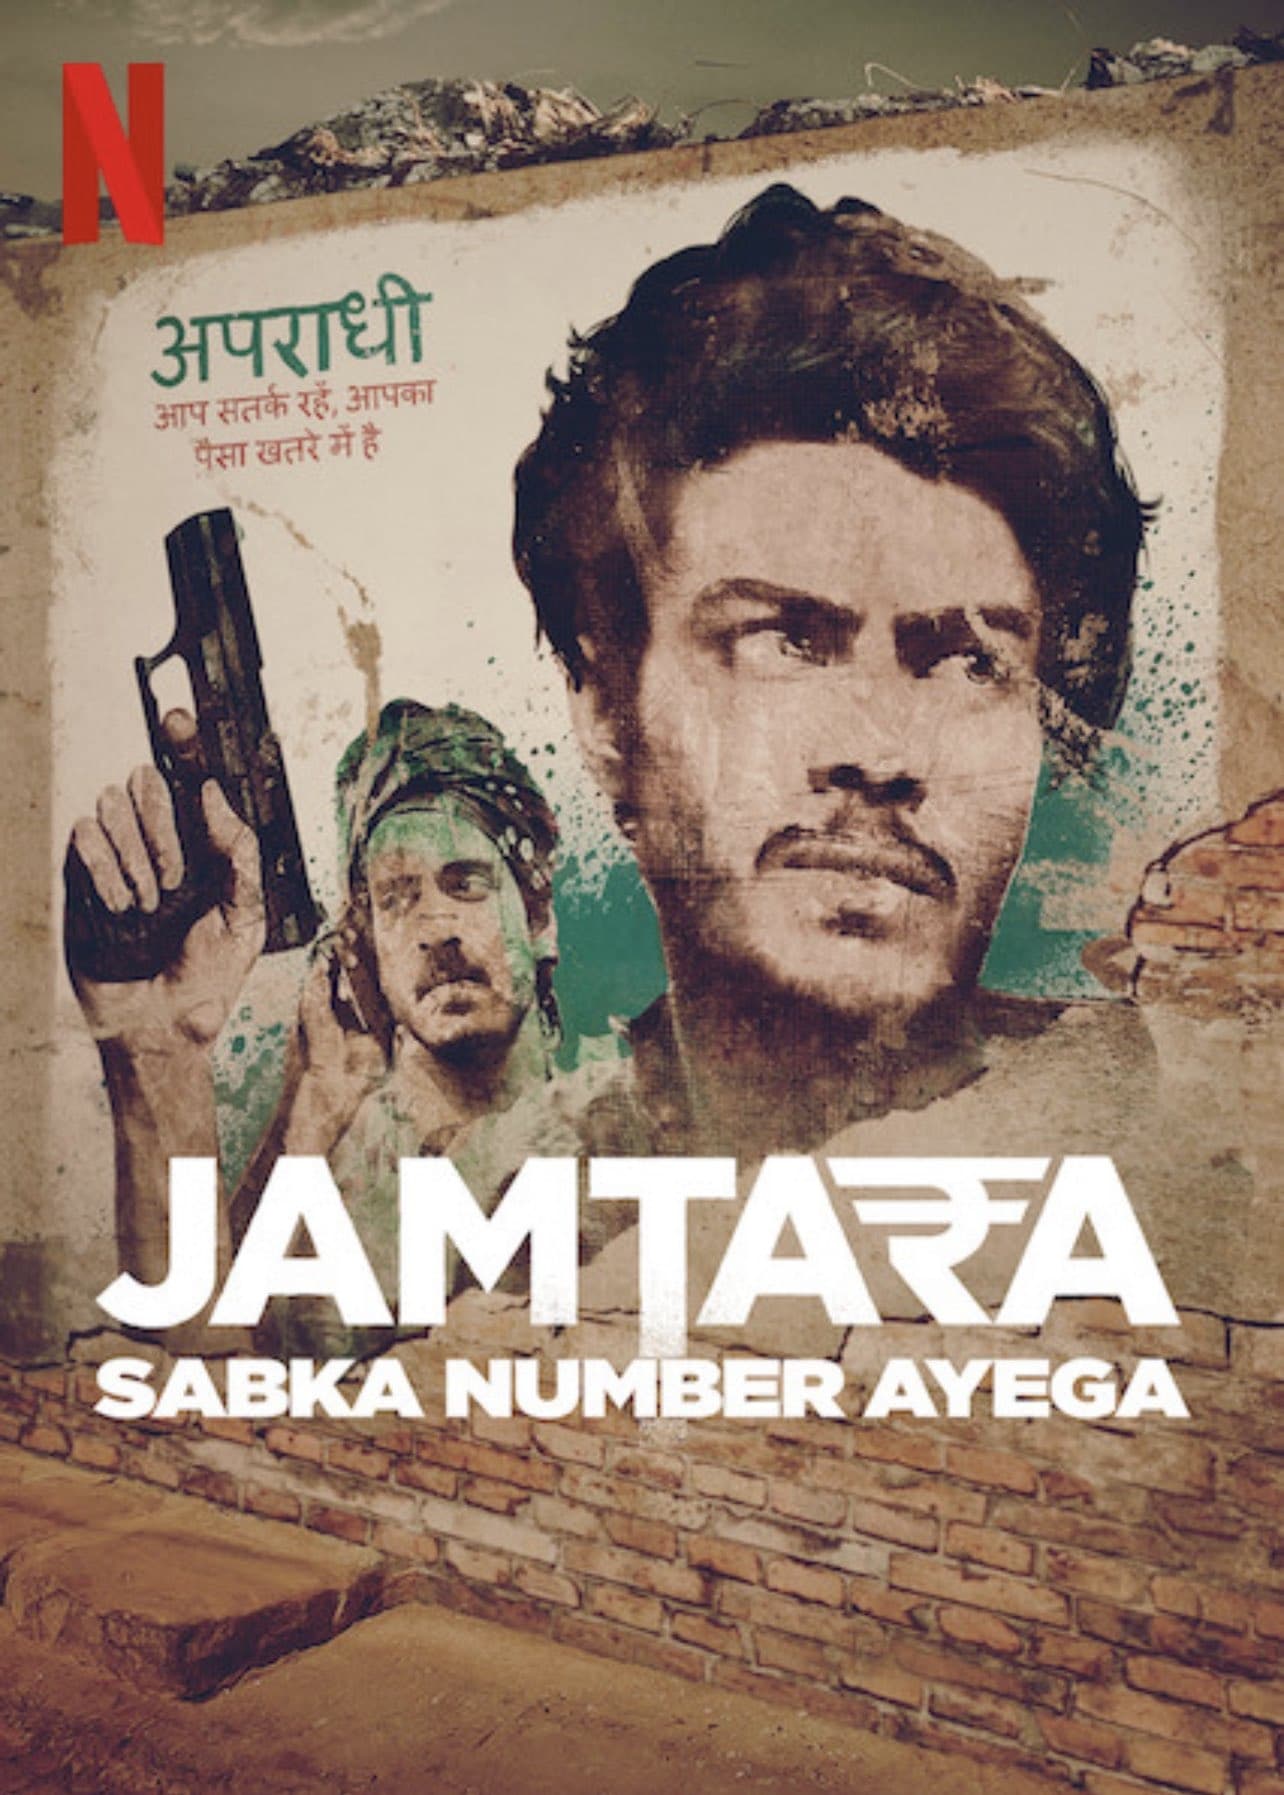 Jamtara – Sabka Number Ayega TV Shows About Scam